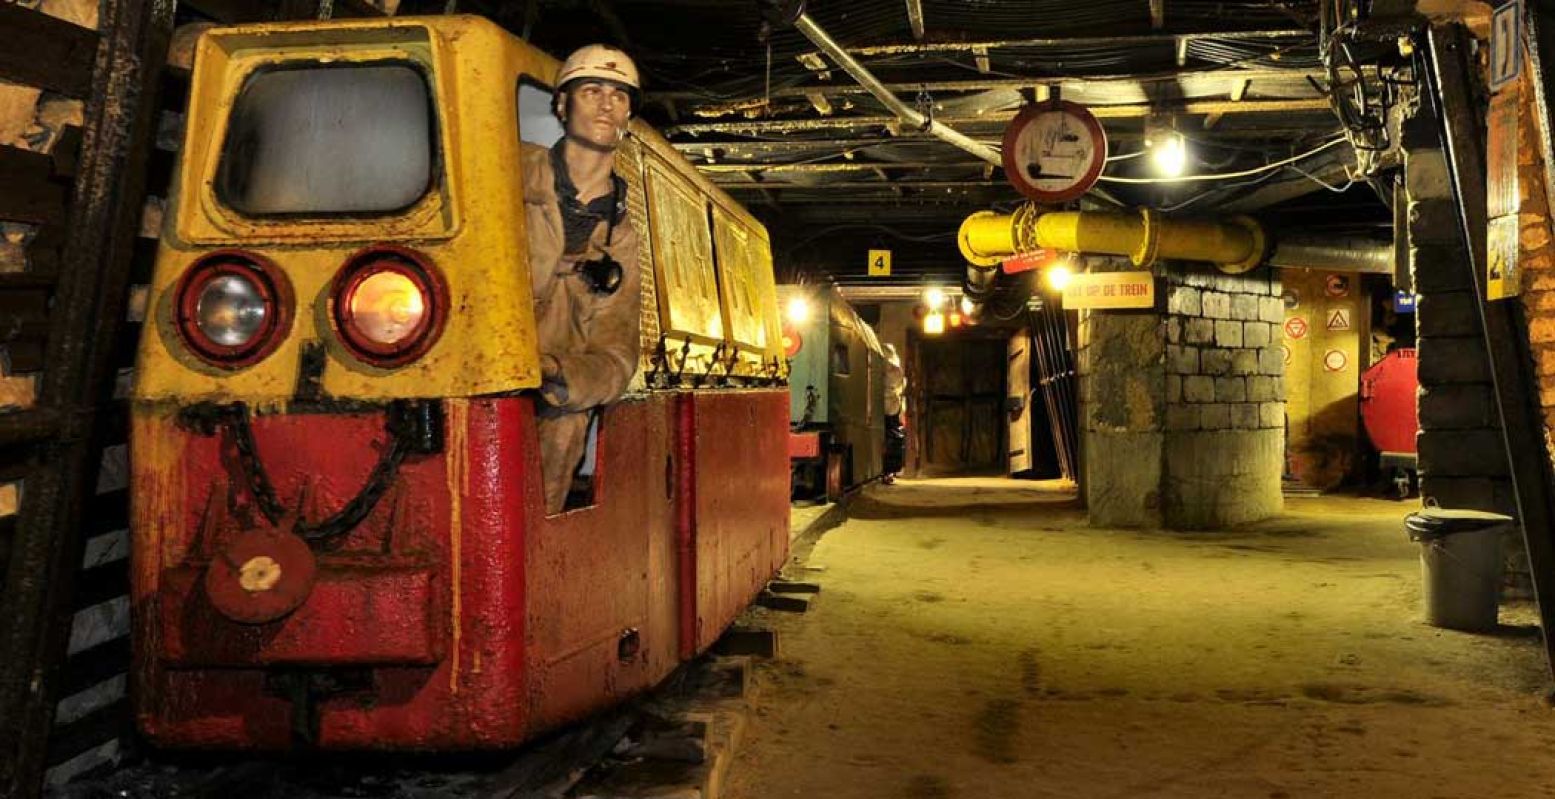 Maak kennis met het zware leven van de mijnwerkers in Steenkolenmijn Valkenburg. Foto: Steenkolenmijn Valkenburg